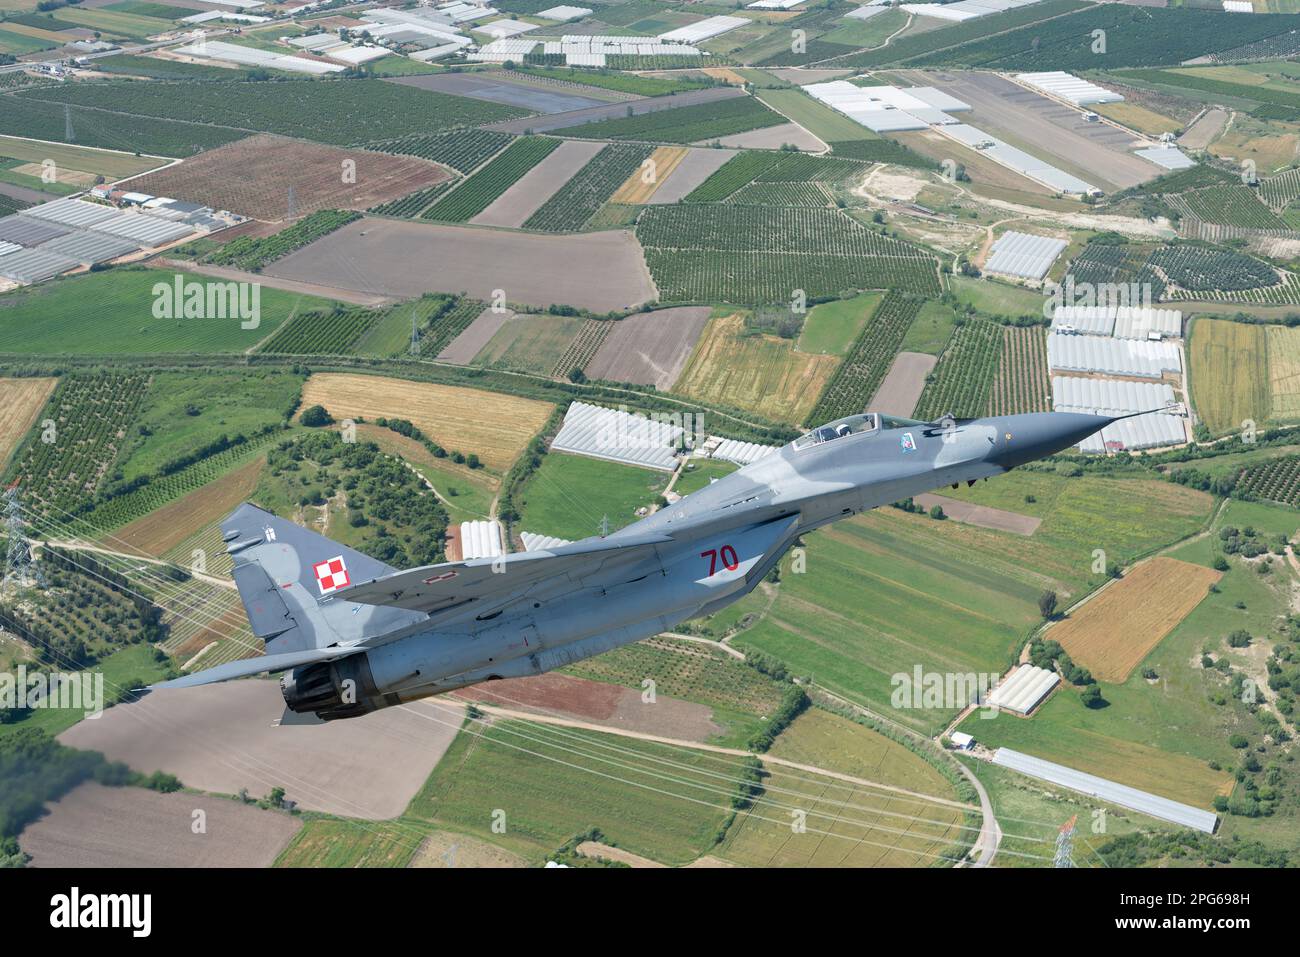 Der polnische Air Force Mig-29 Fighter Jet fliegt während eines Air-to-Air-Fluges über der türkischen Landschaft Stockfoto